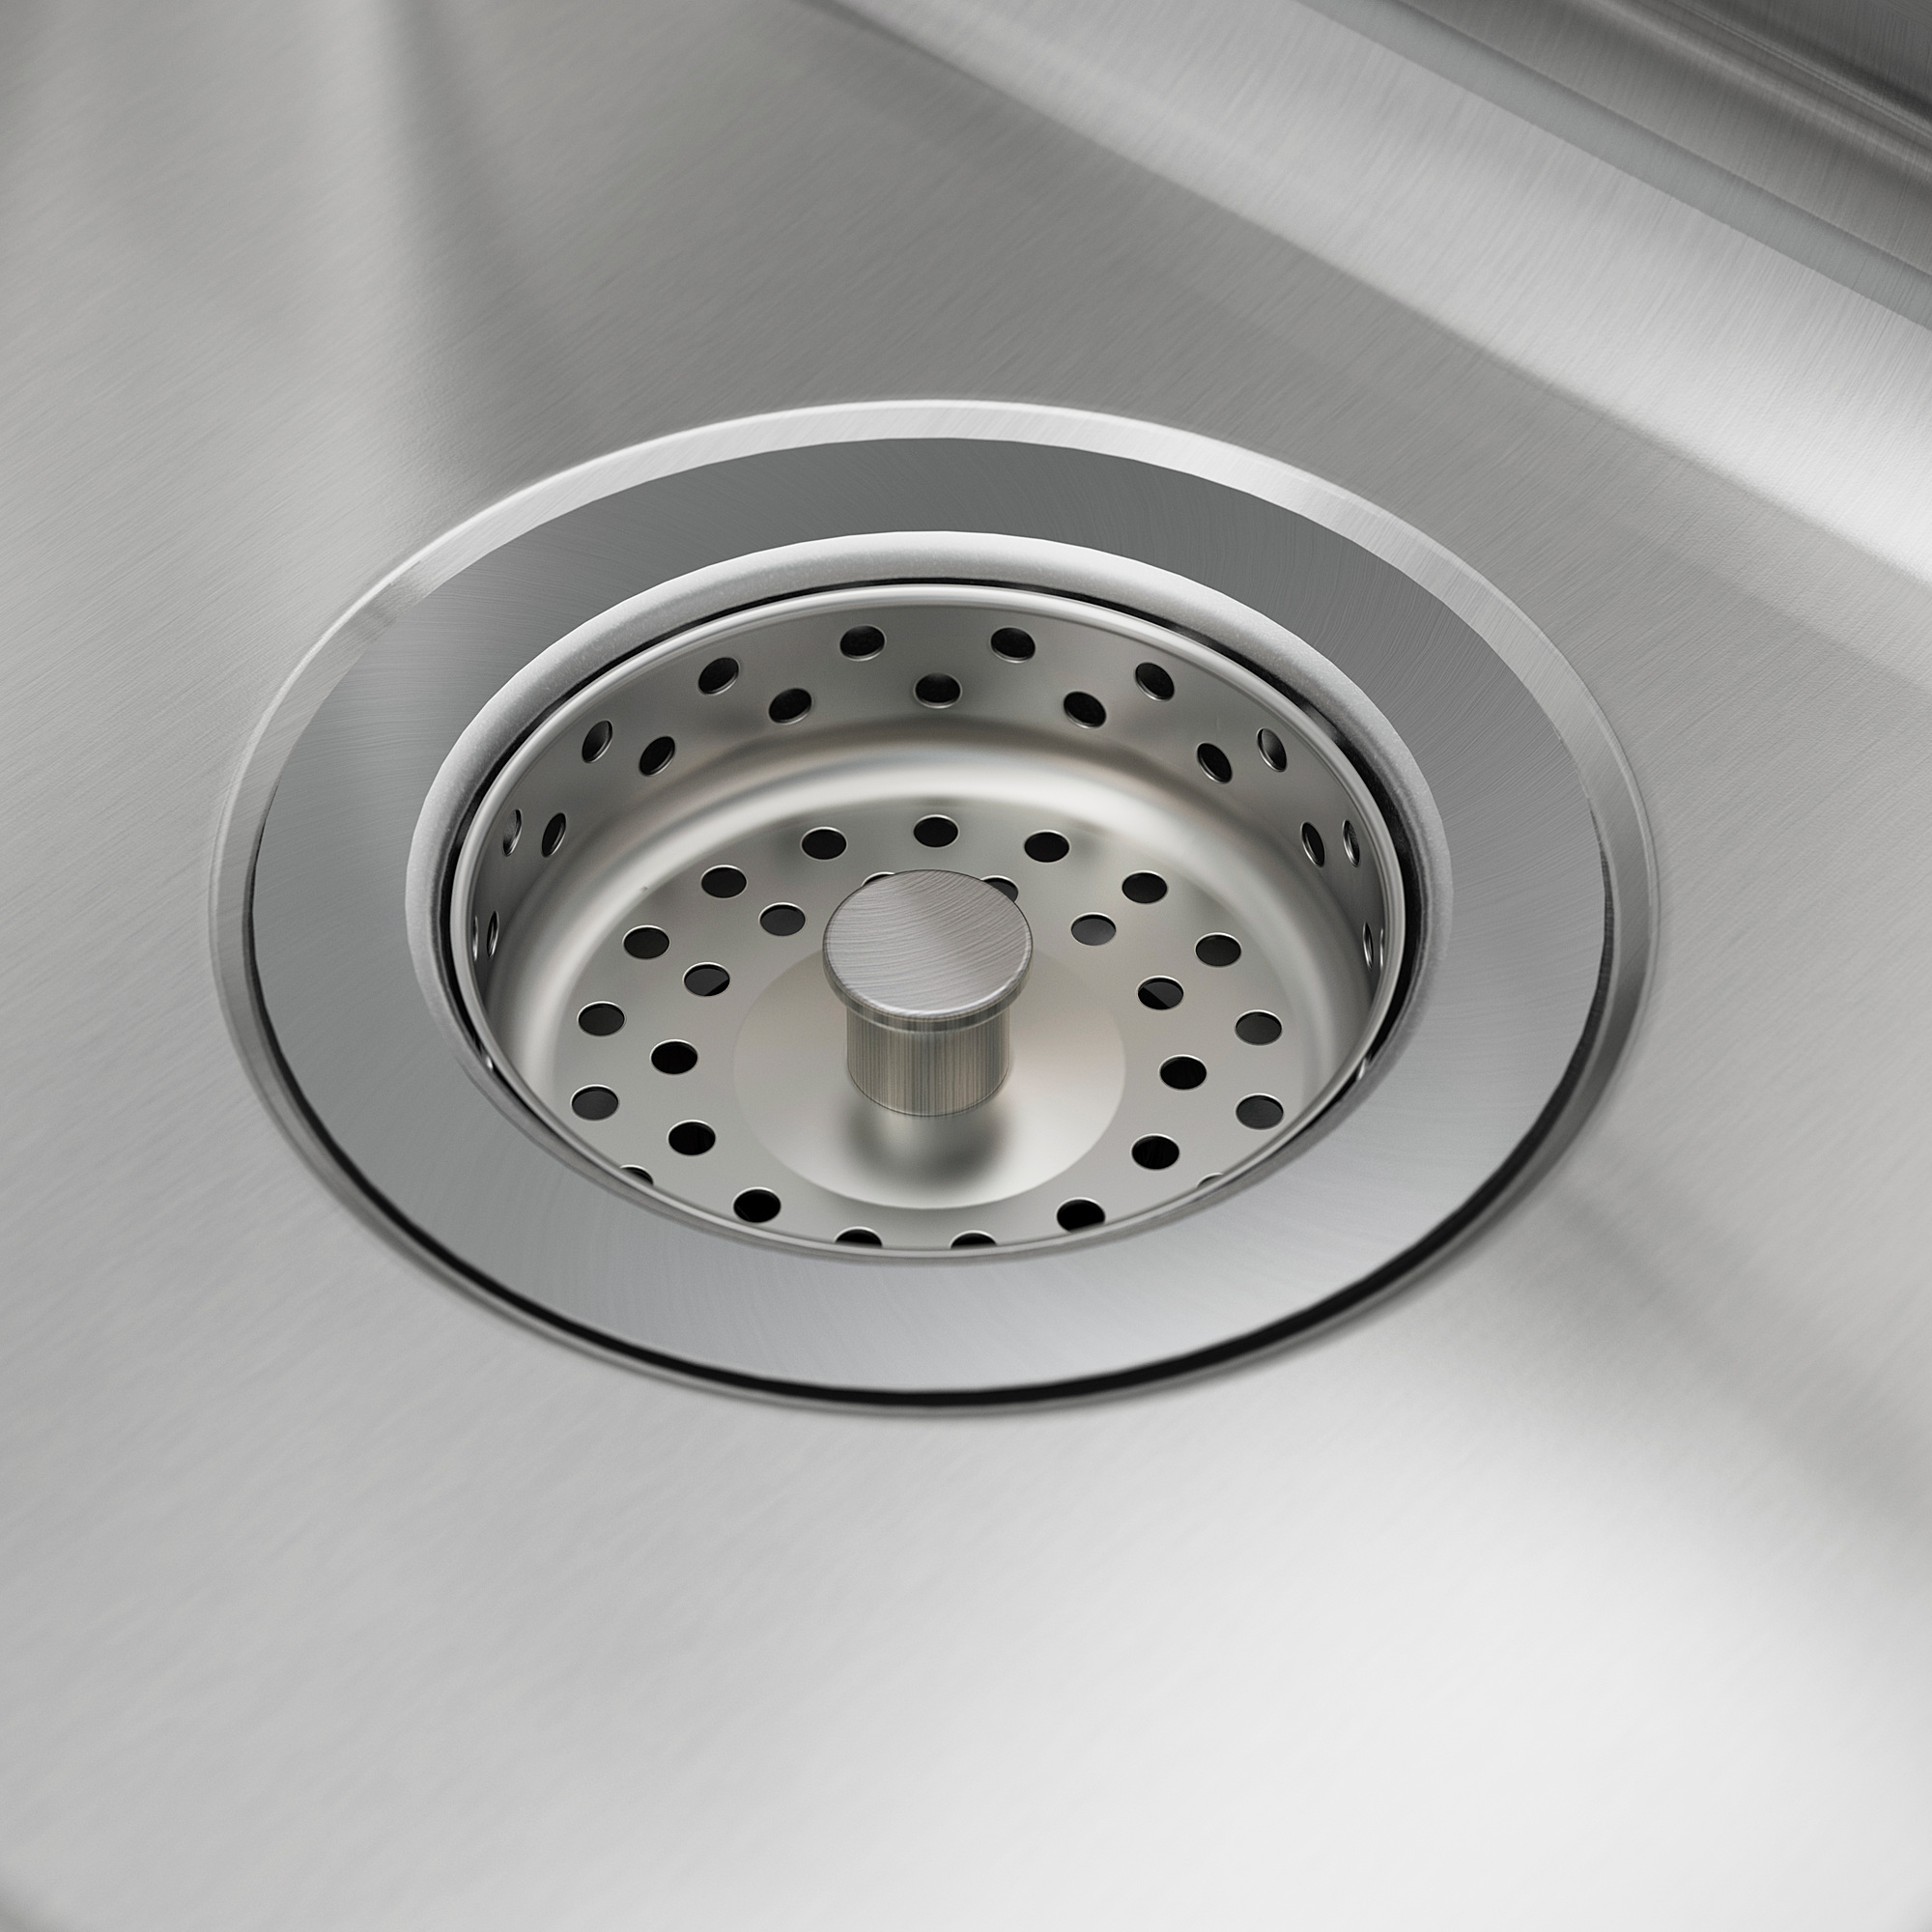 VATTUDALEN inset sink, 1 ½ bowl w drainboard